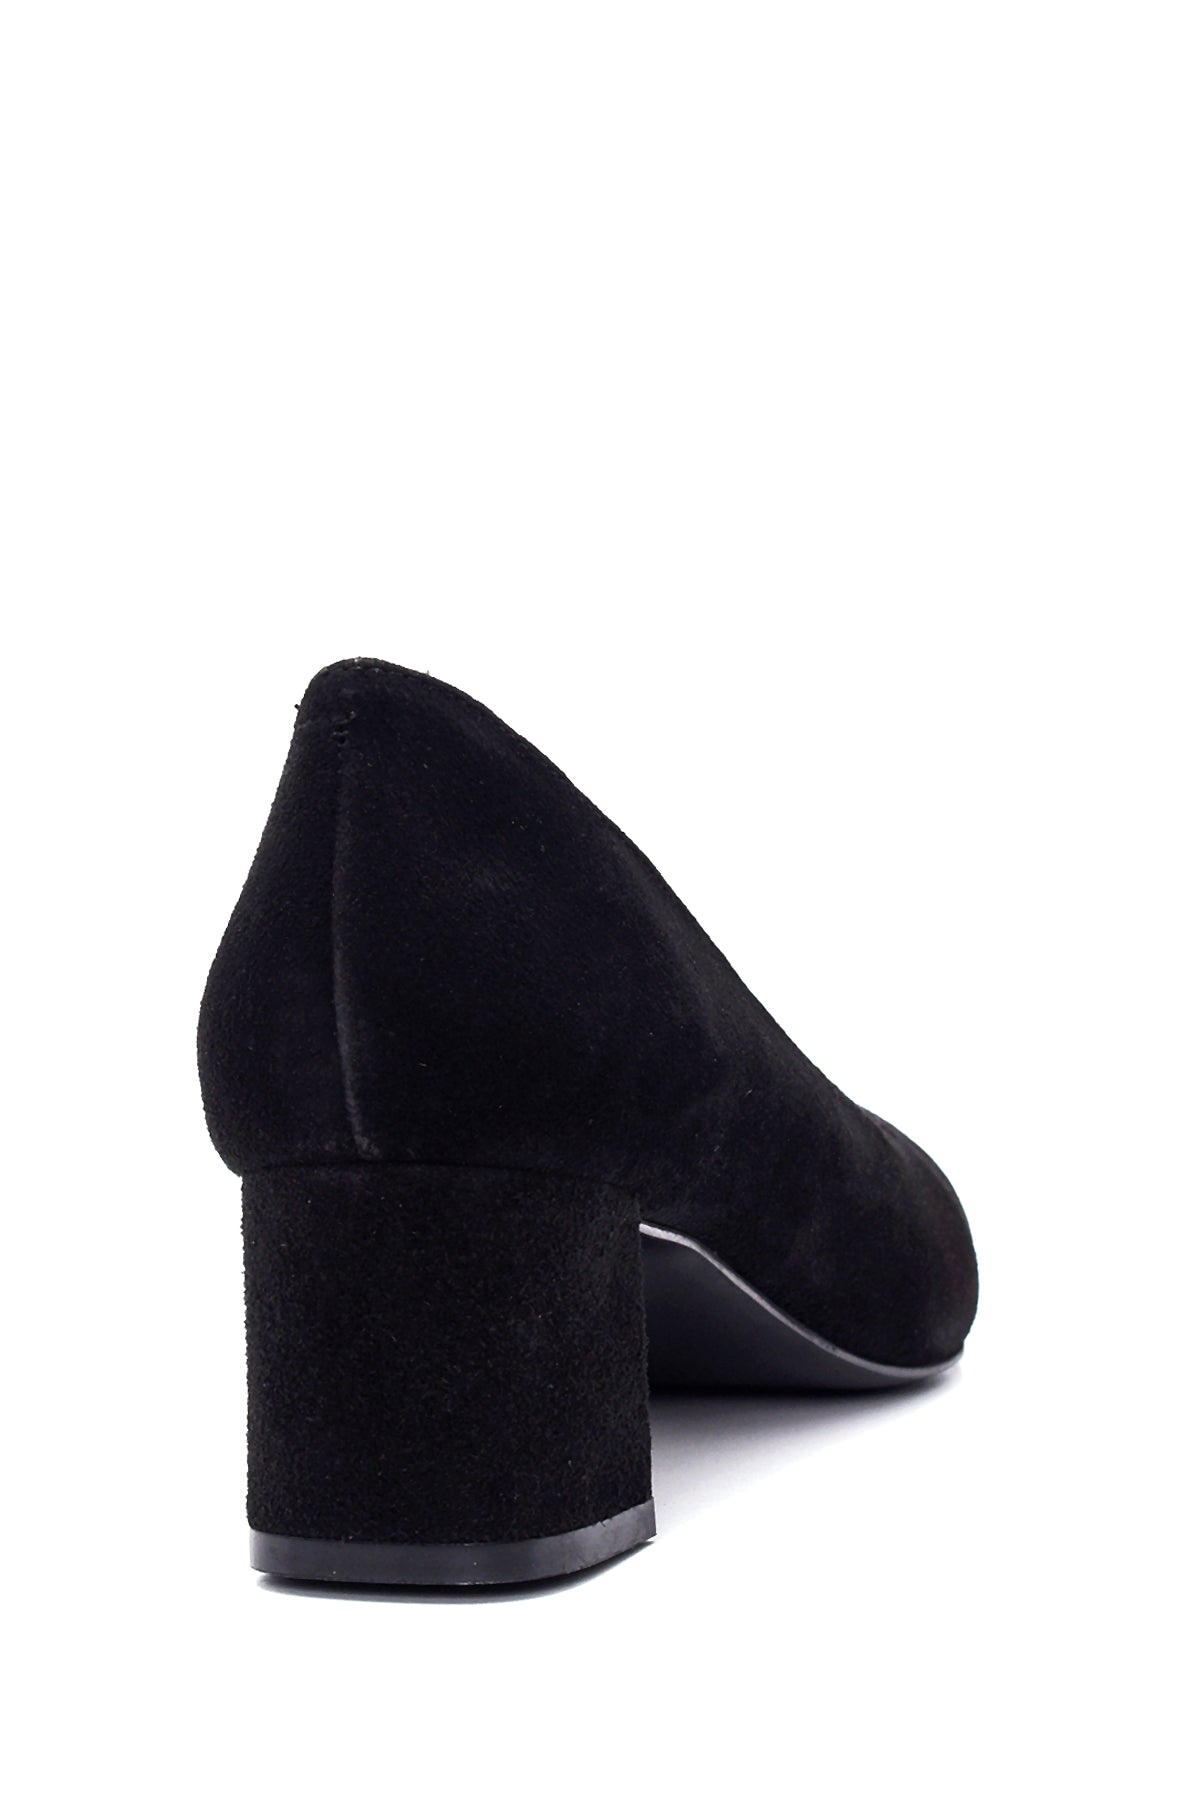 Kadın Siyah Süet Deri Topuklu Ayakkabı